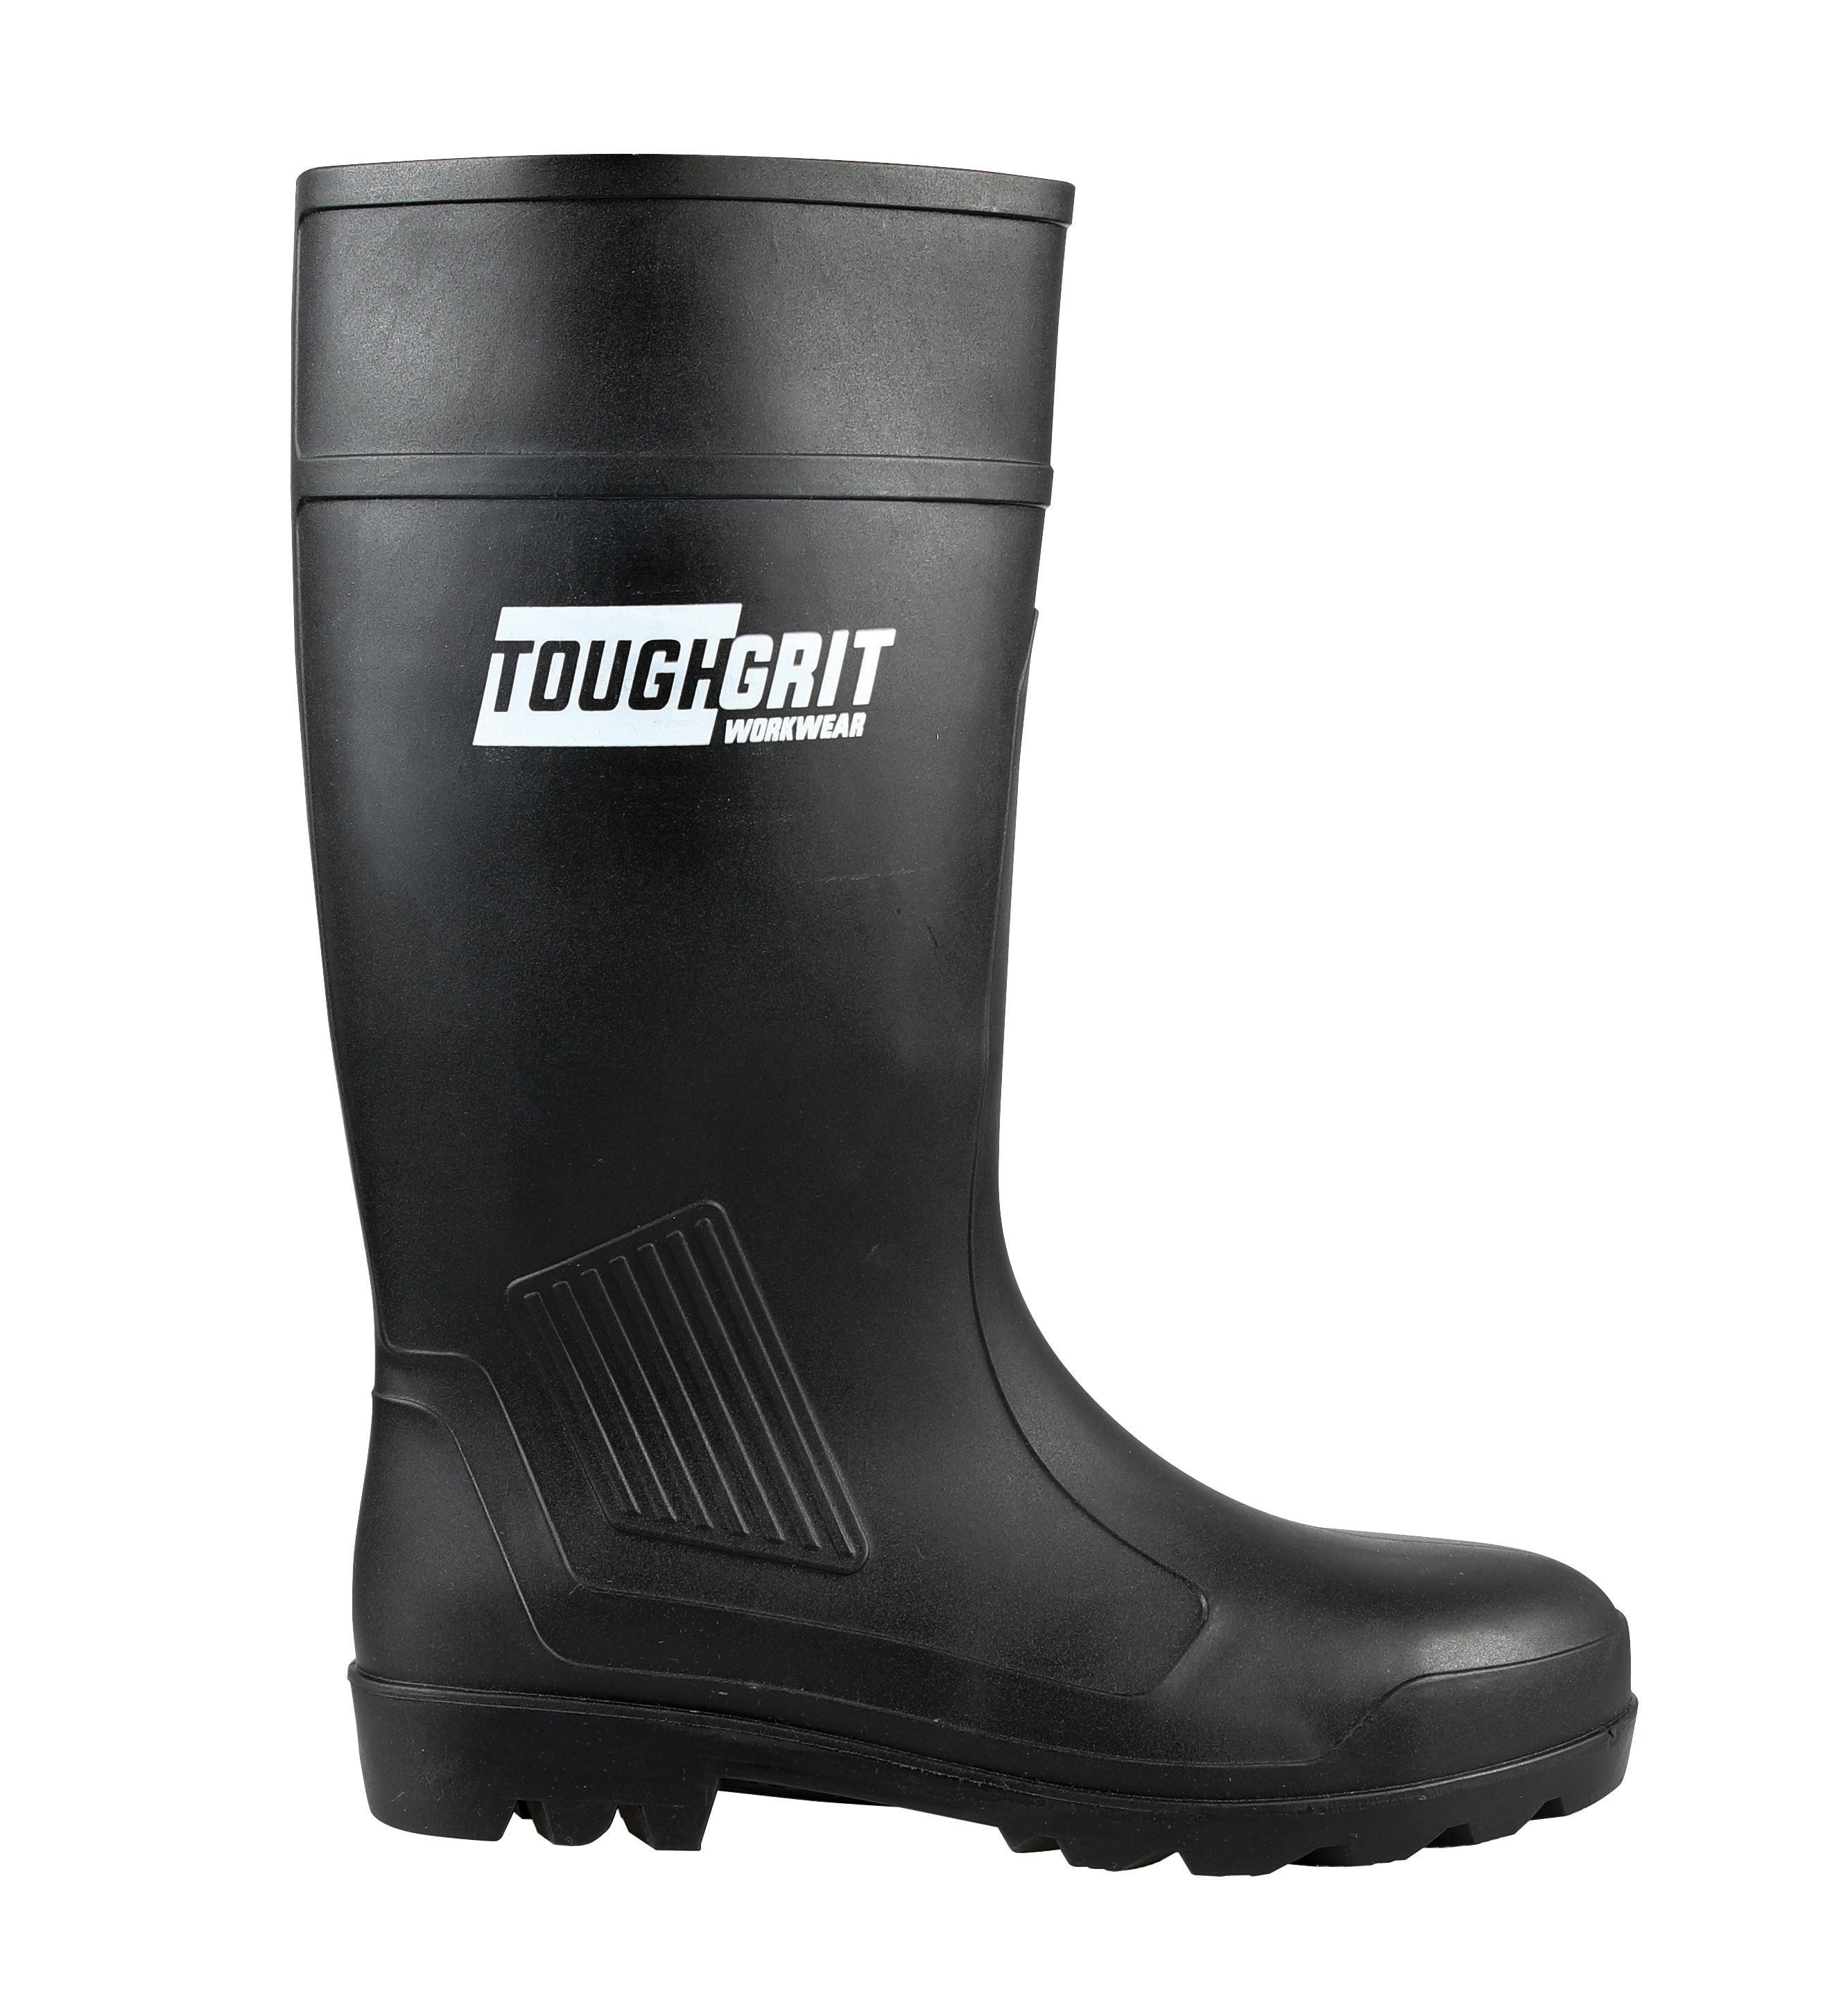 Tough Grit Larch Safety Wellington Boot - Black Size 8